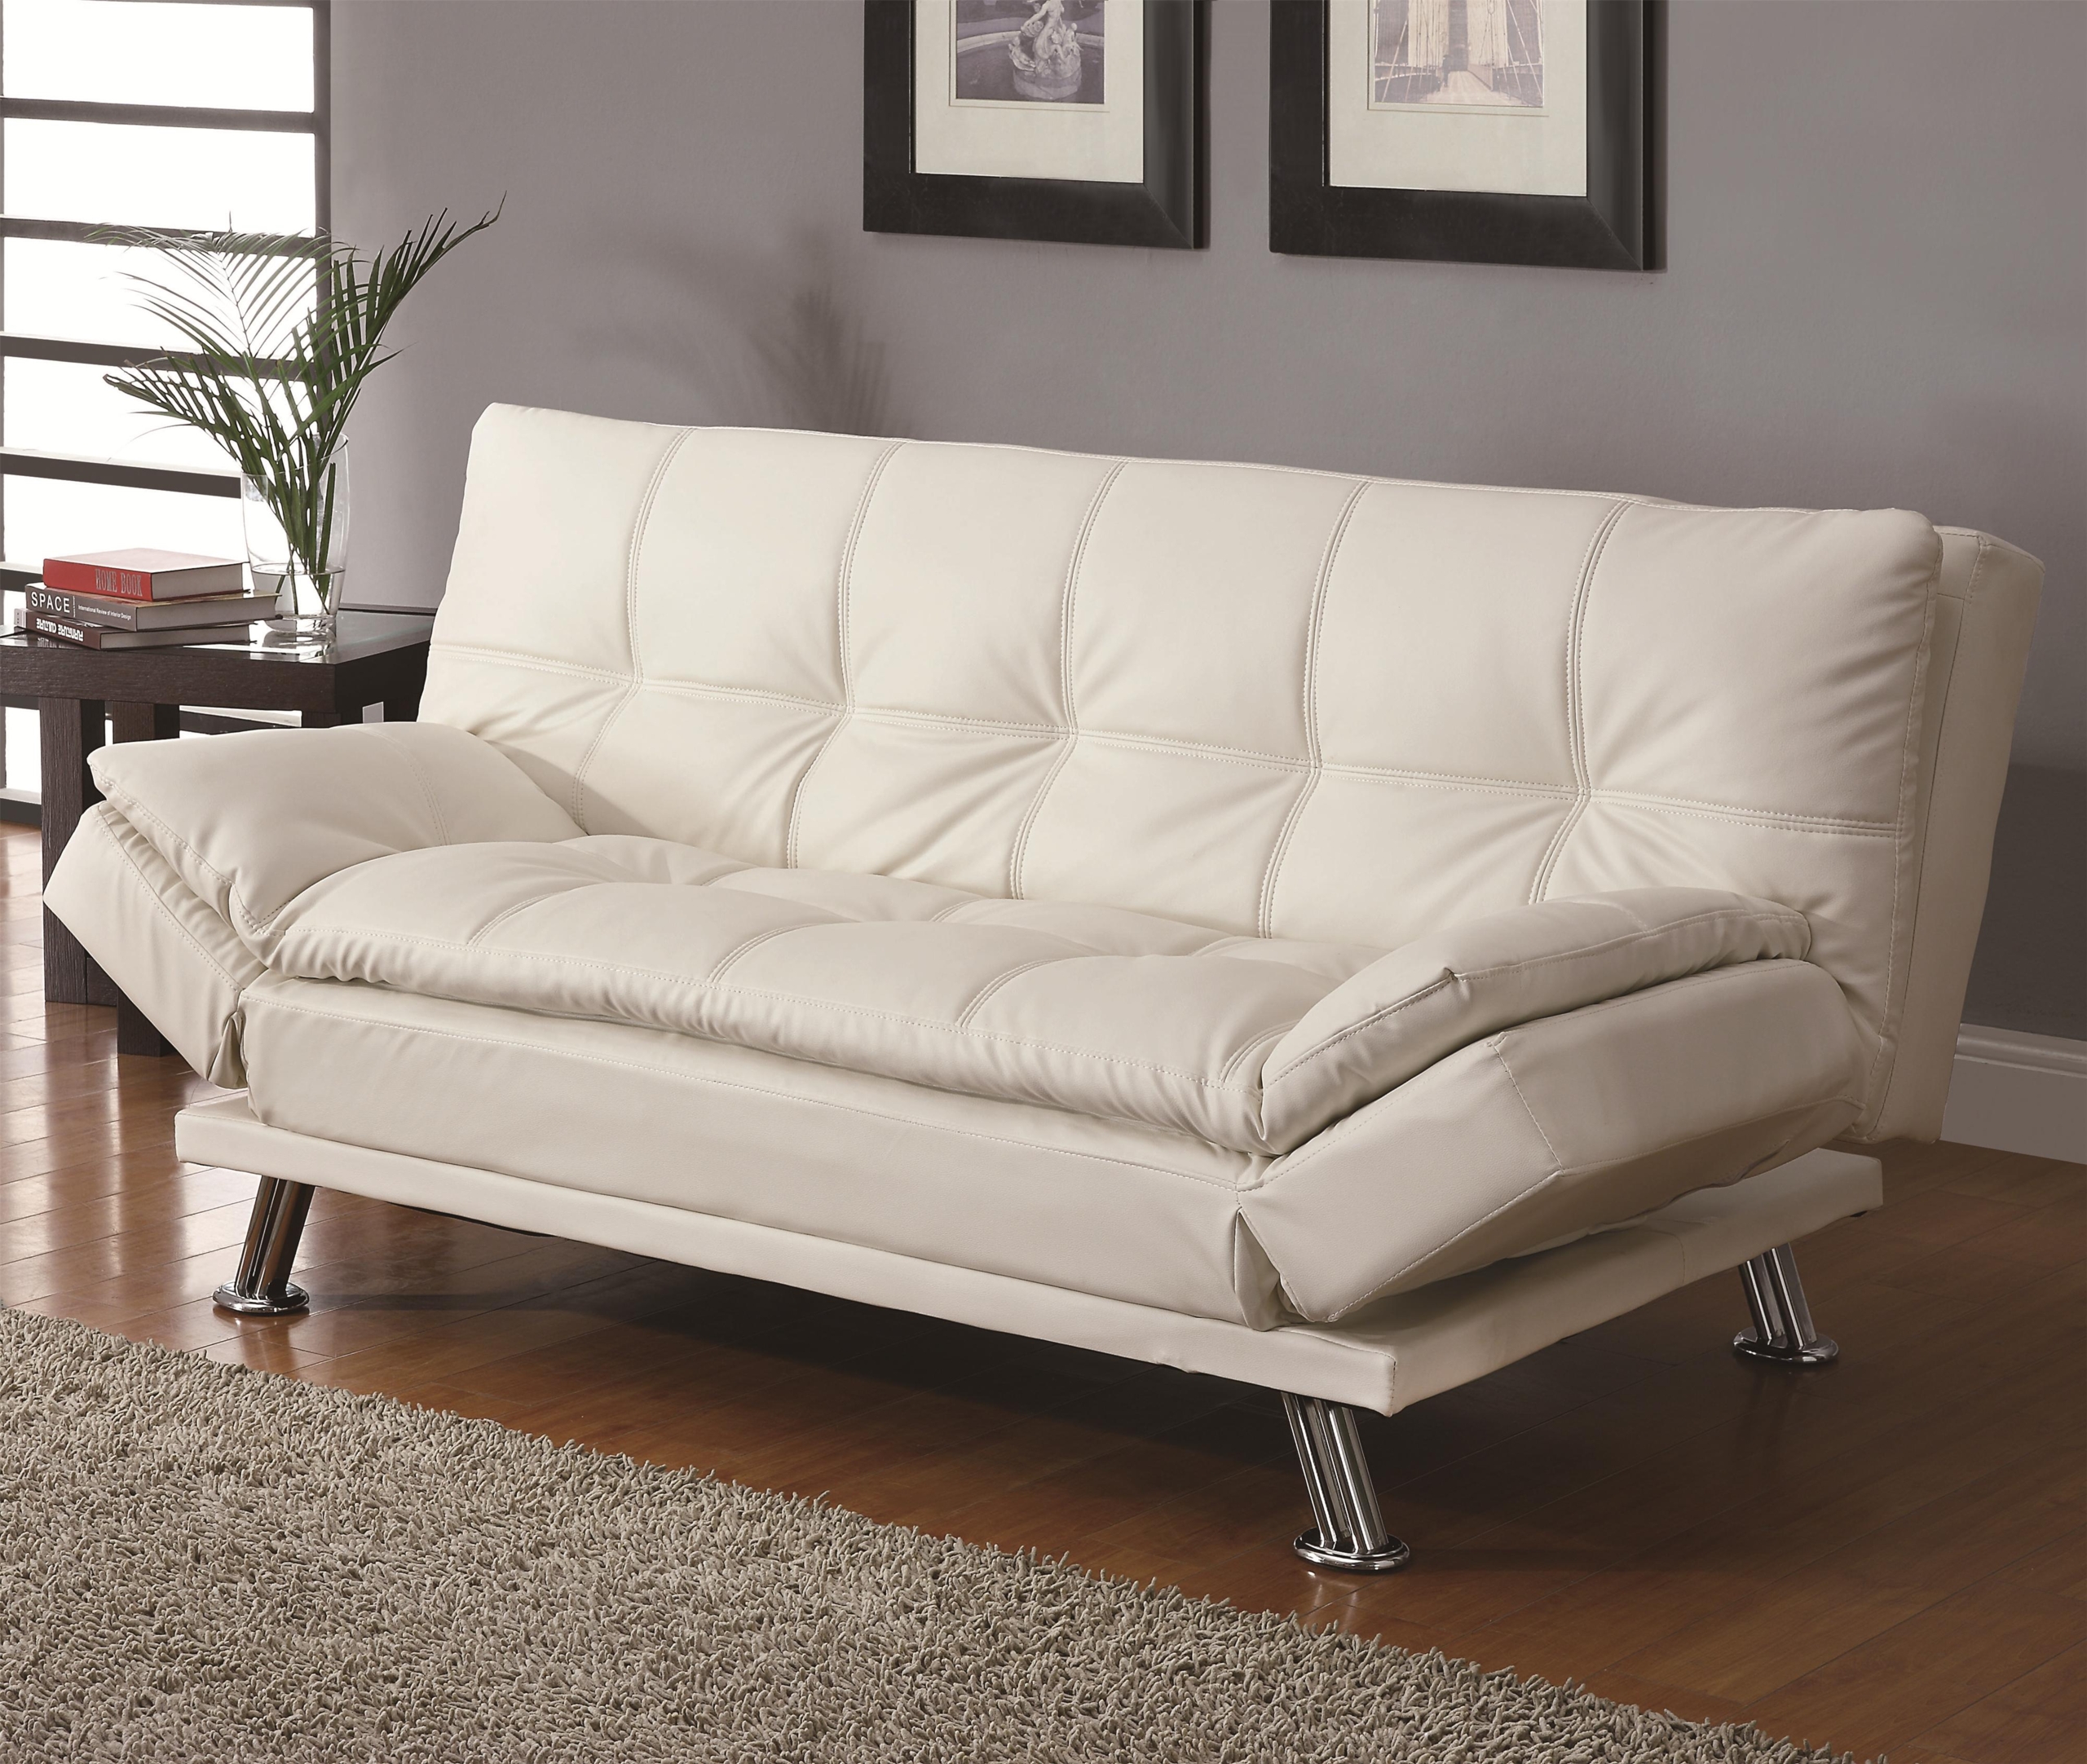 Leather futon sofa bed terrific color photo